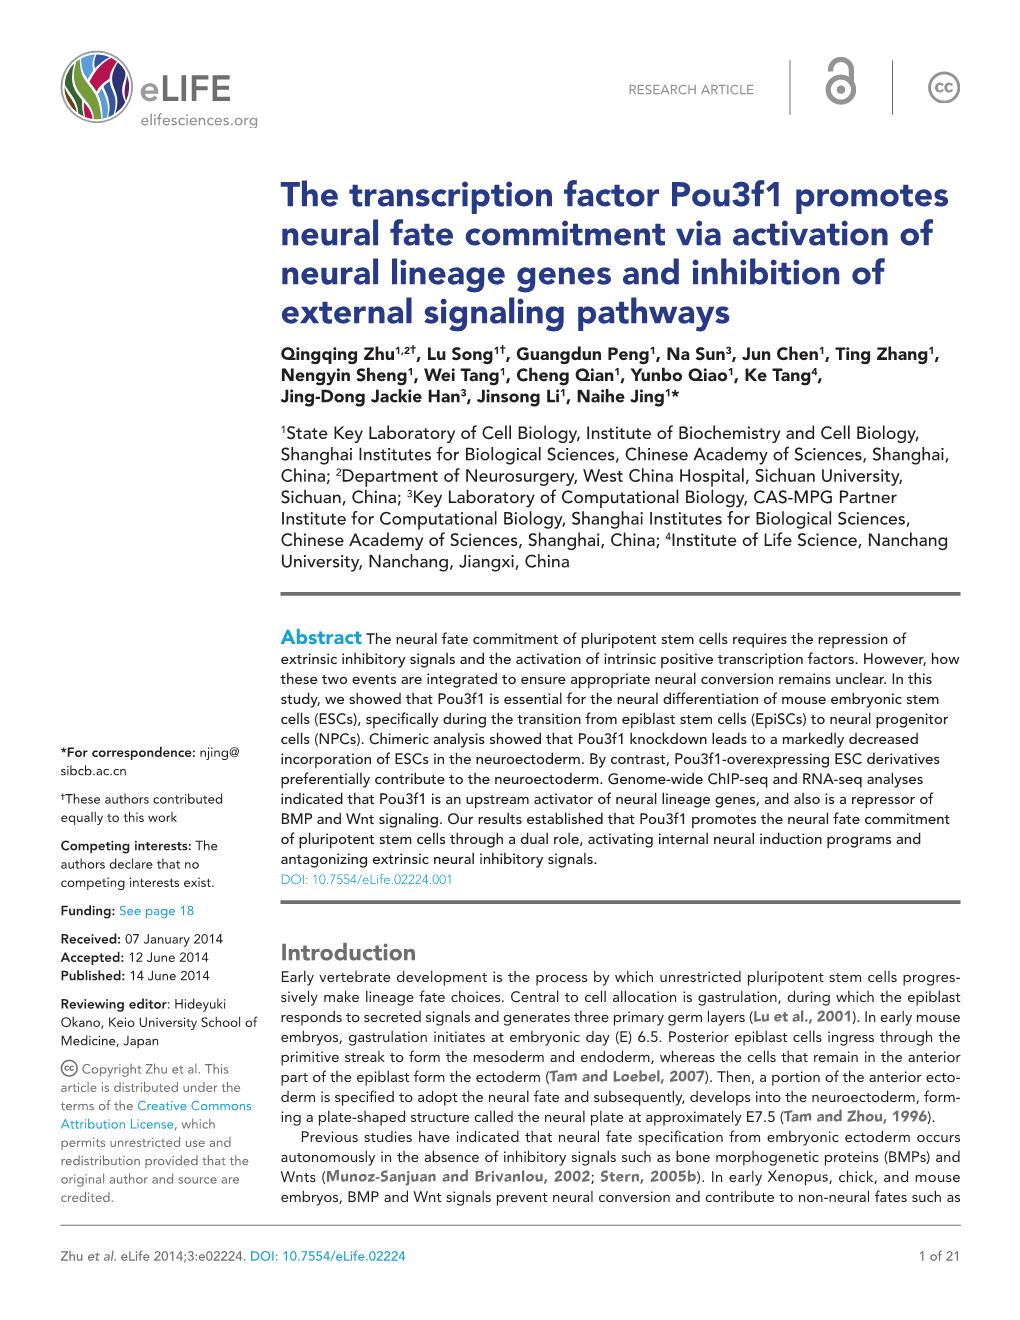 The Transcription Factor Pou3f1 Promotes Neural Fate Commitment